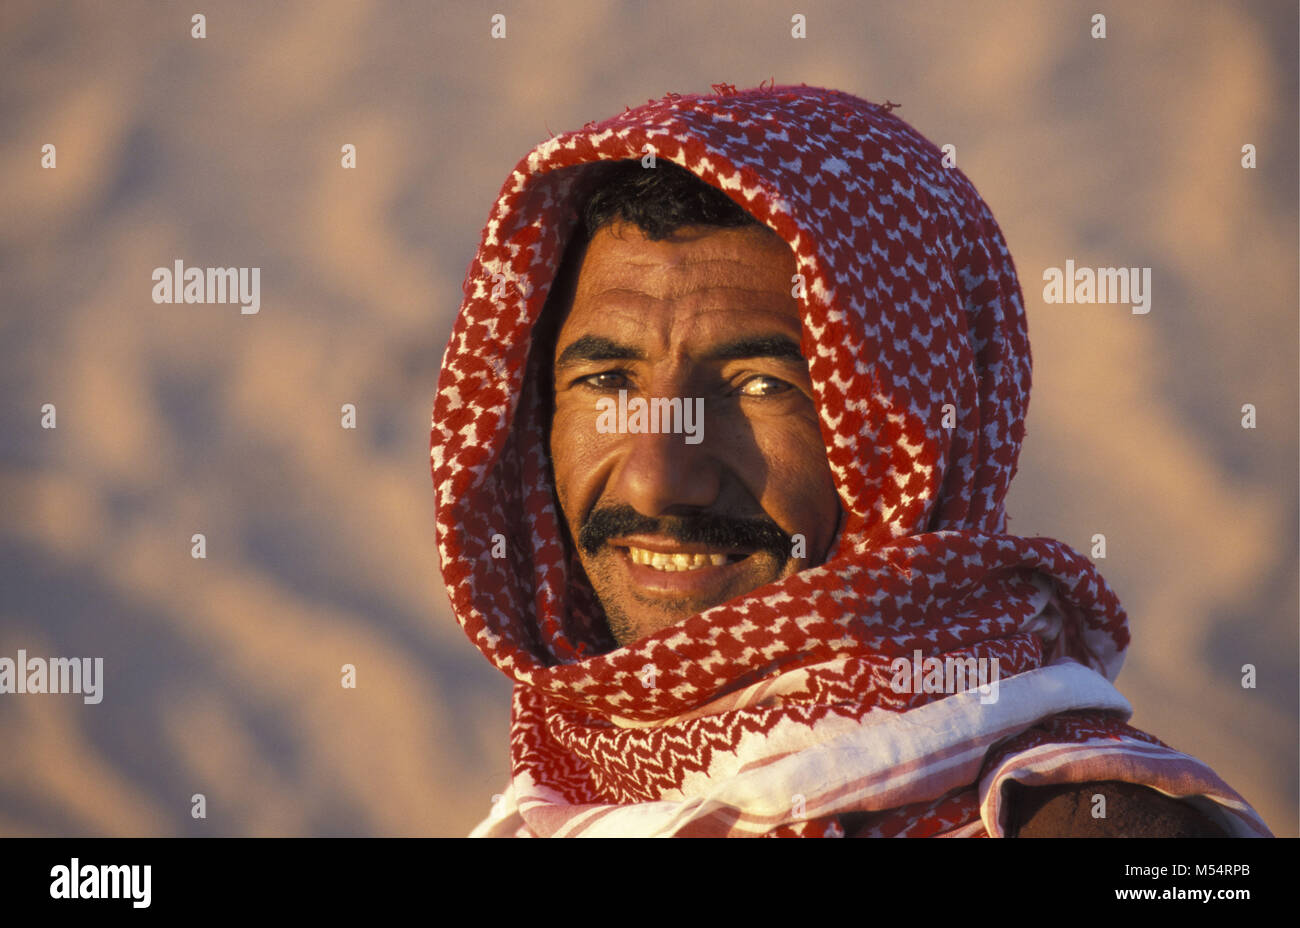 L'Algérie. Près de Touggourt. La Mer de Sable. Grand Erg Oriental. Désert du Sahara. Portrait d'homme bédouin. Banque D'Images